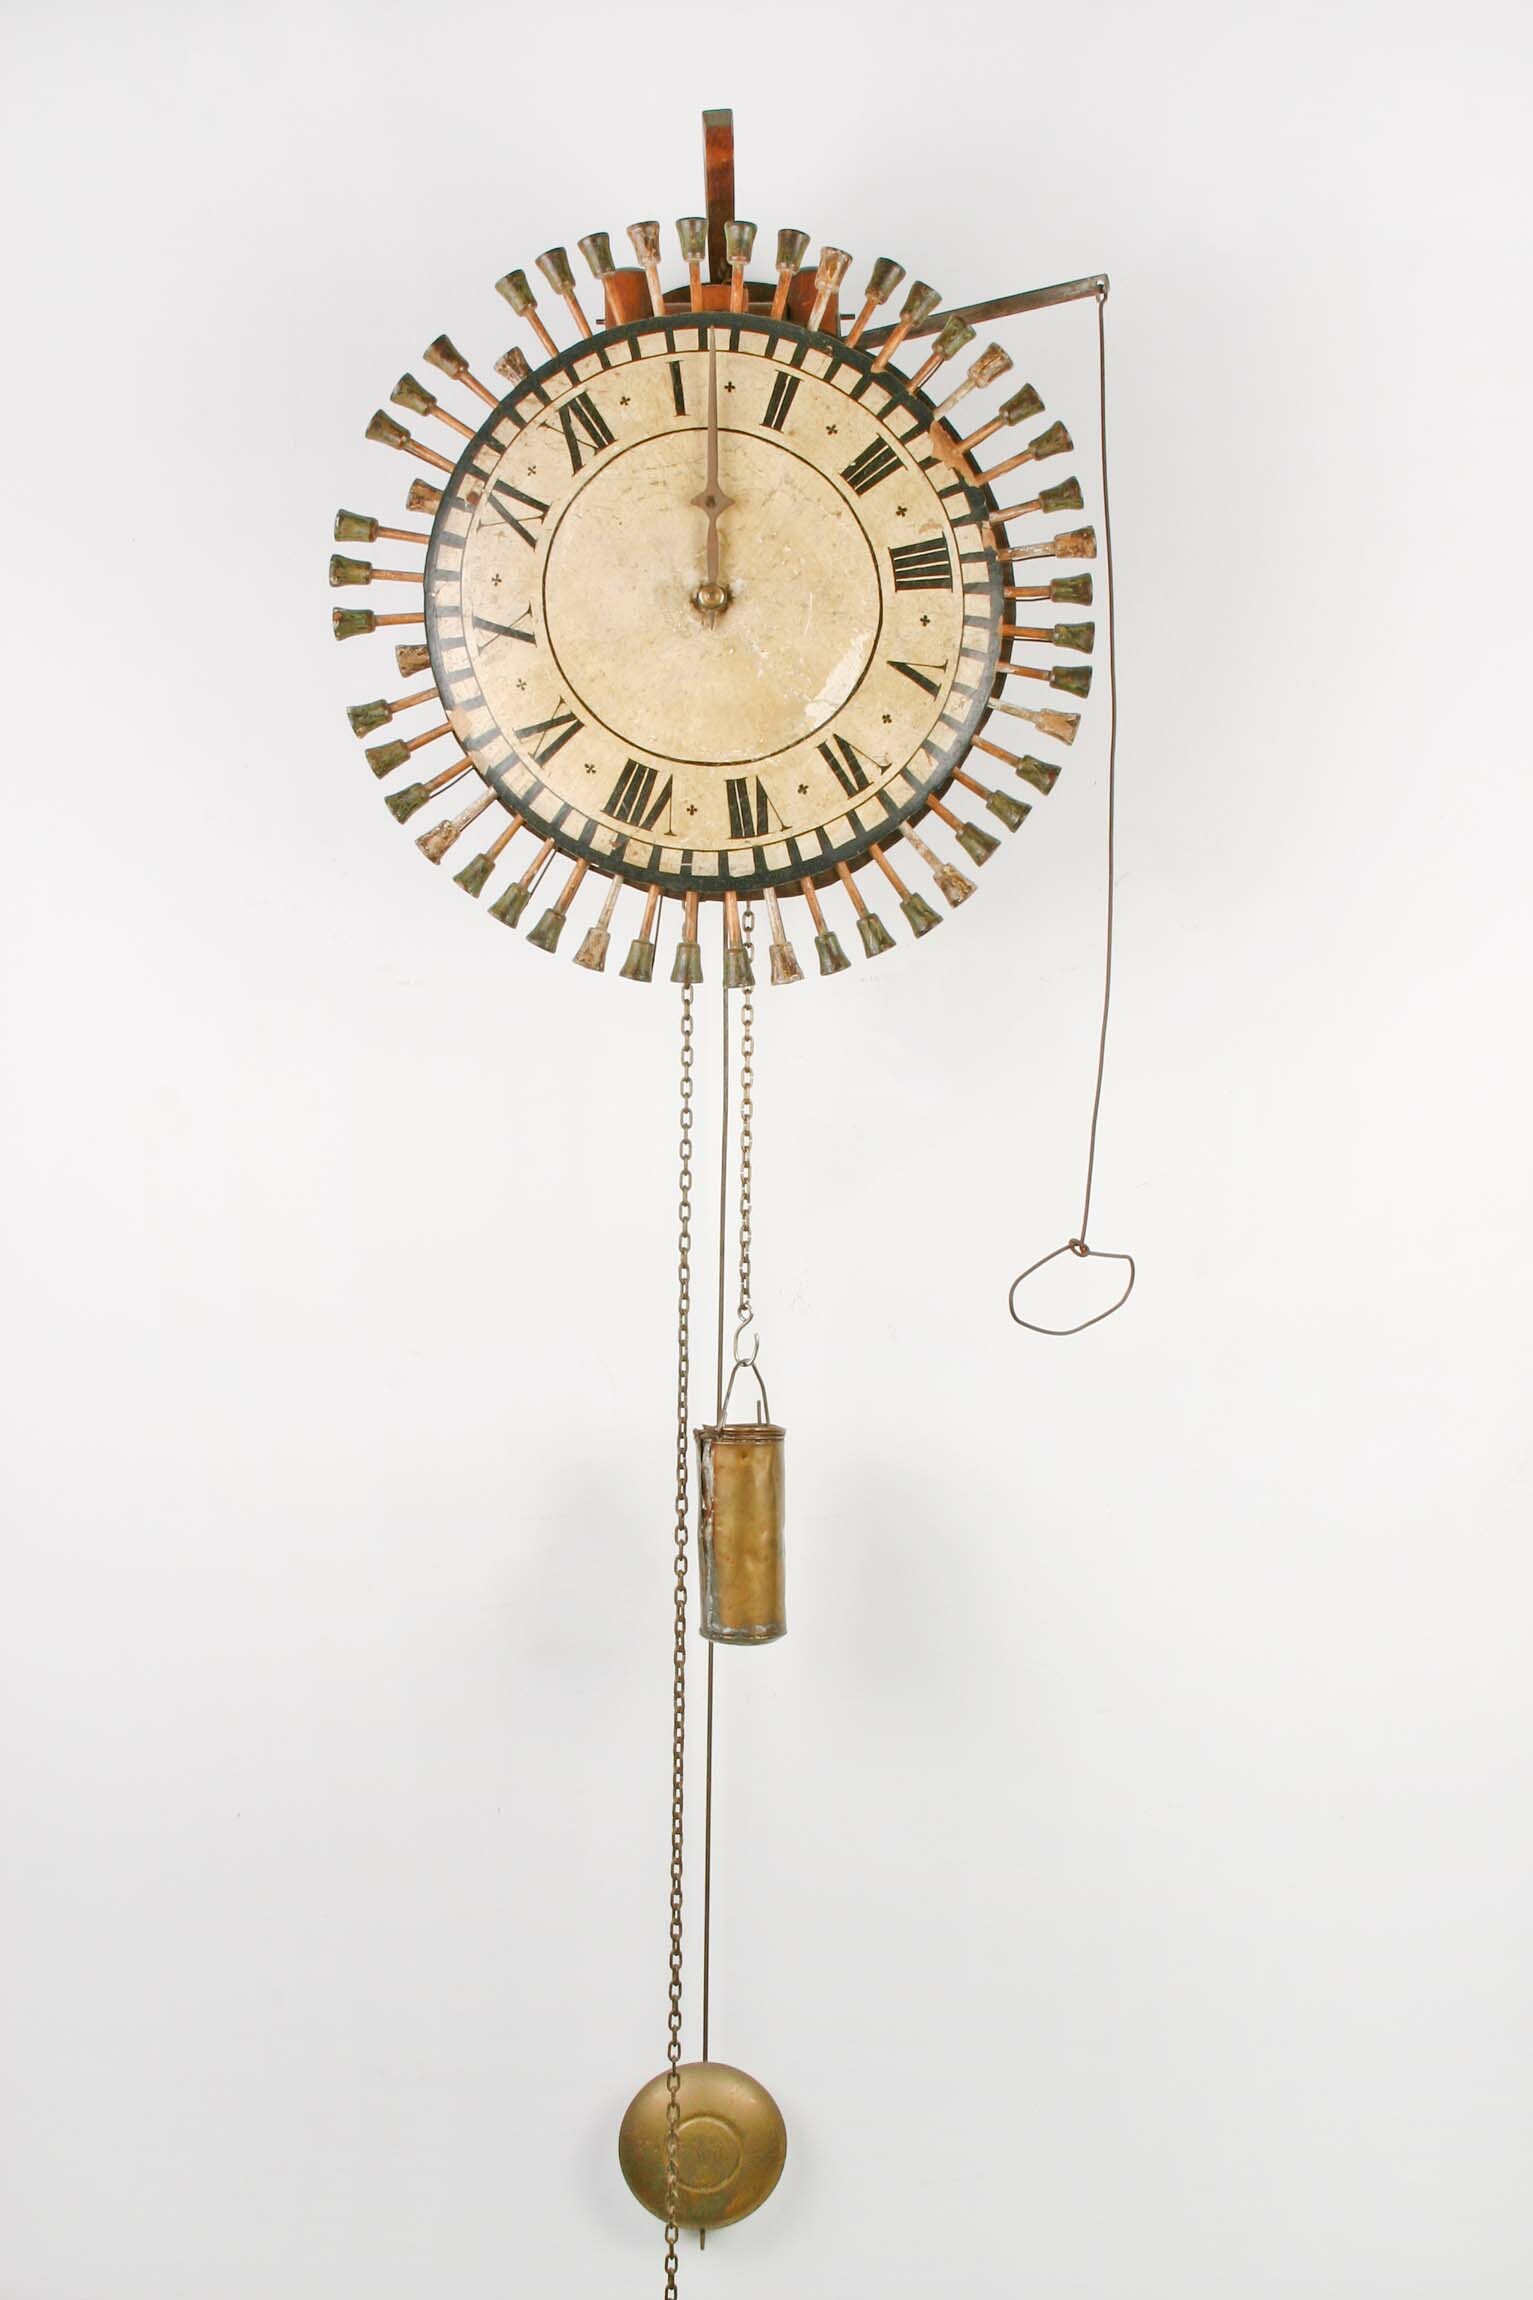 Nachtwächterkontrolluhr, Valentin Kammerer zugeschrieben, Triberg, 1806 (Deutsches Uhrenmuseum CC BY-SA)